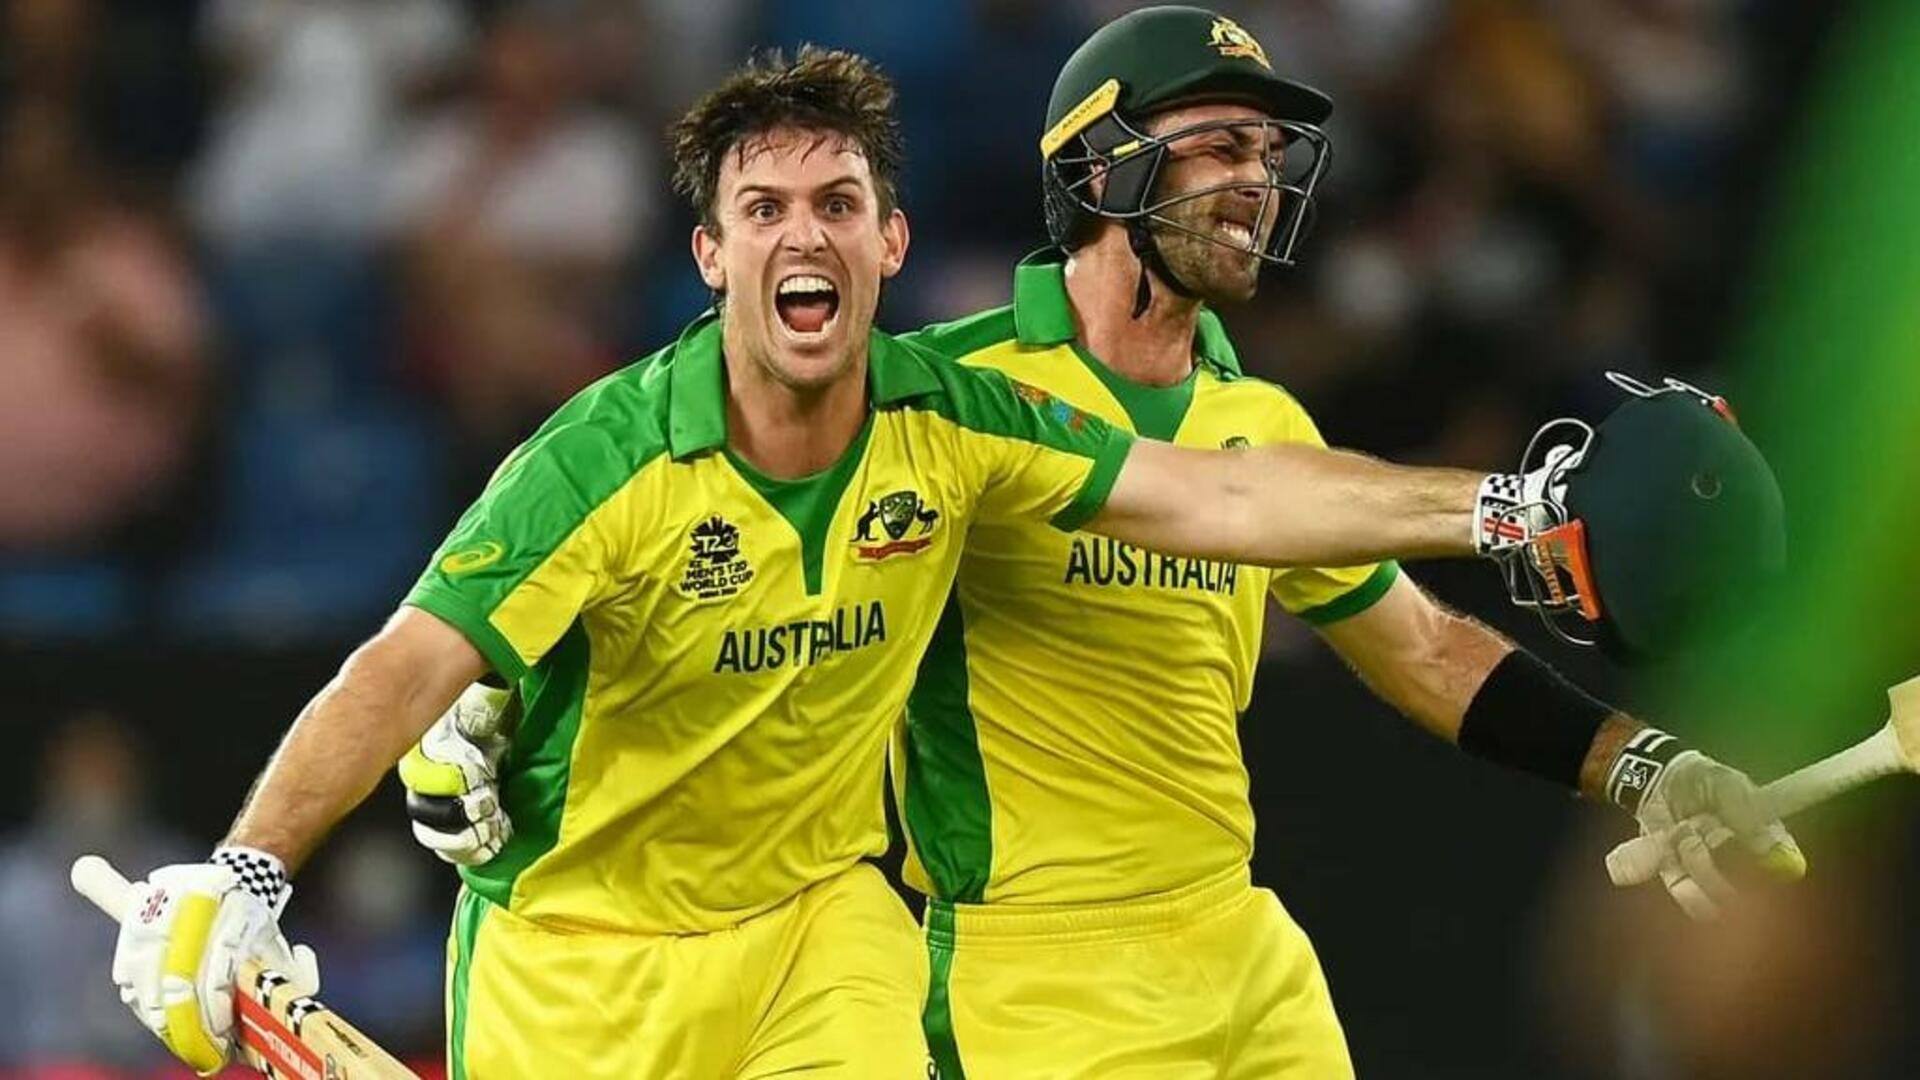 भारत के खिलाफ वनडे सीरीज के लिए ऑस्ट्रेलिया क्रिकेट टीम की हुई घोषणा, मैक्सवेल की वापसी 